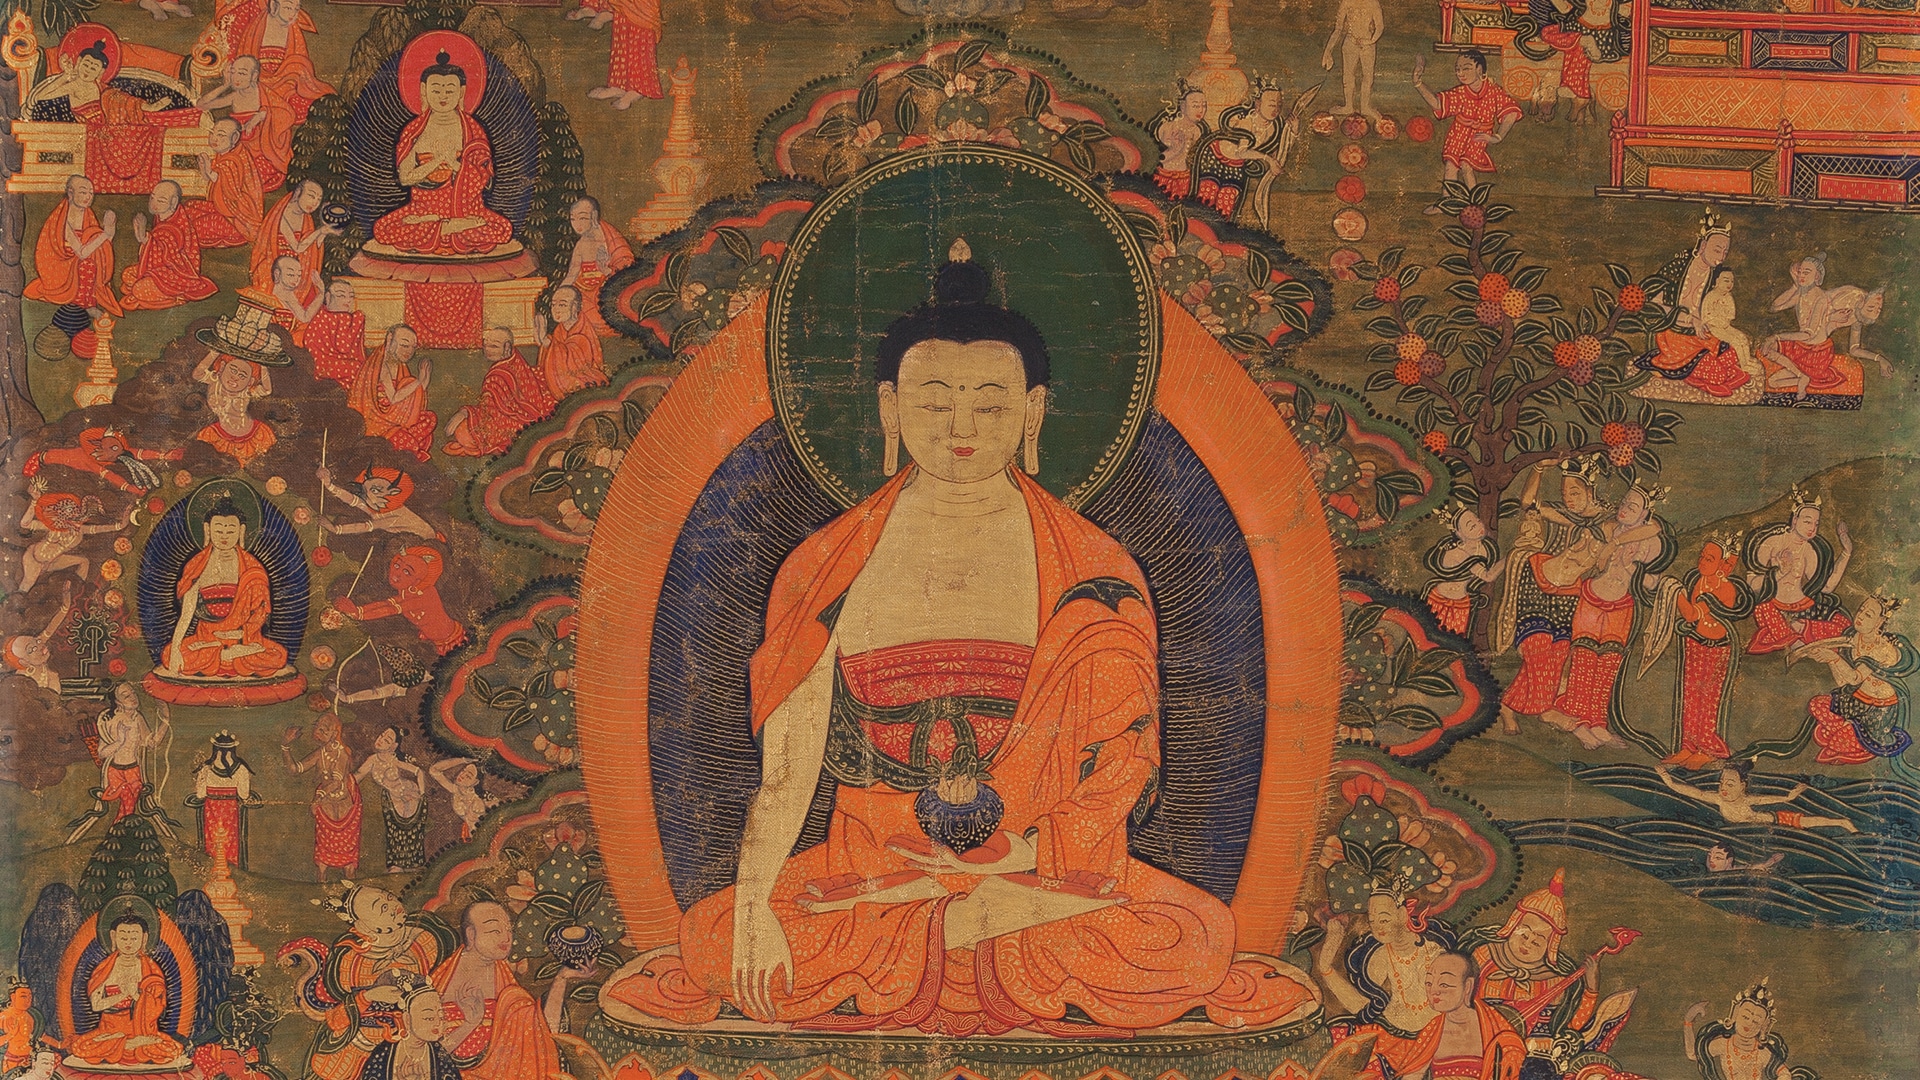 image detail of "Life Story of Buddha, Shakyamuni"